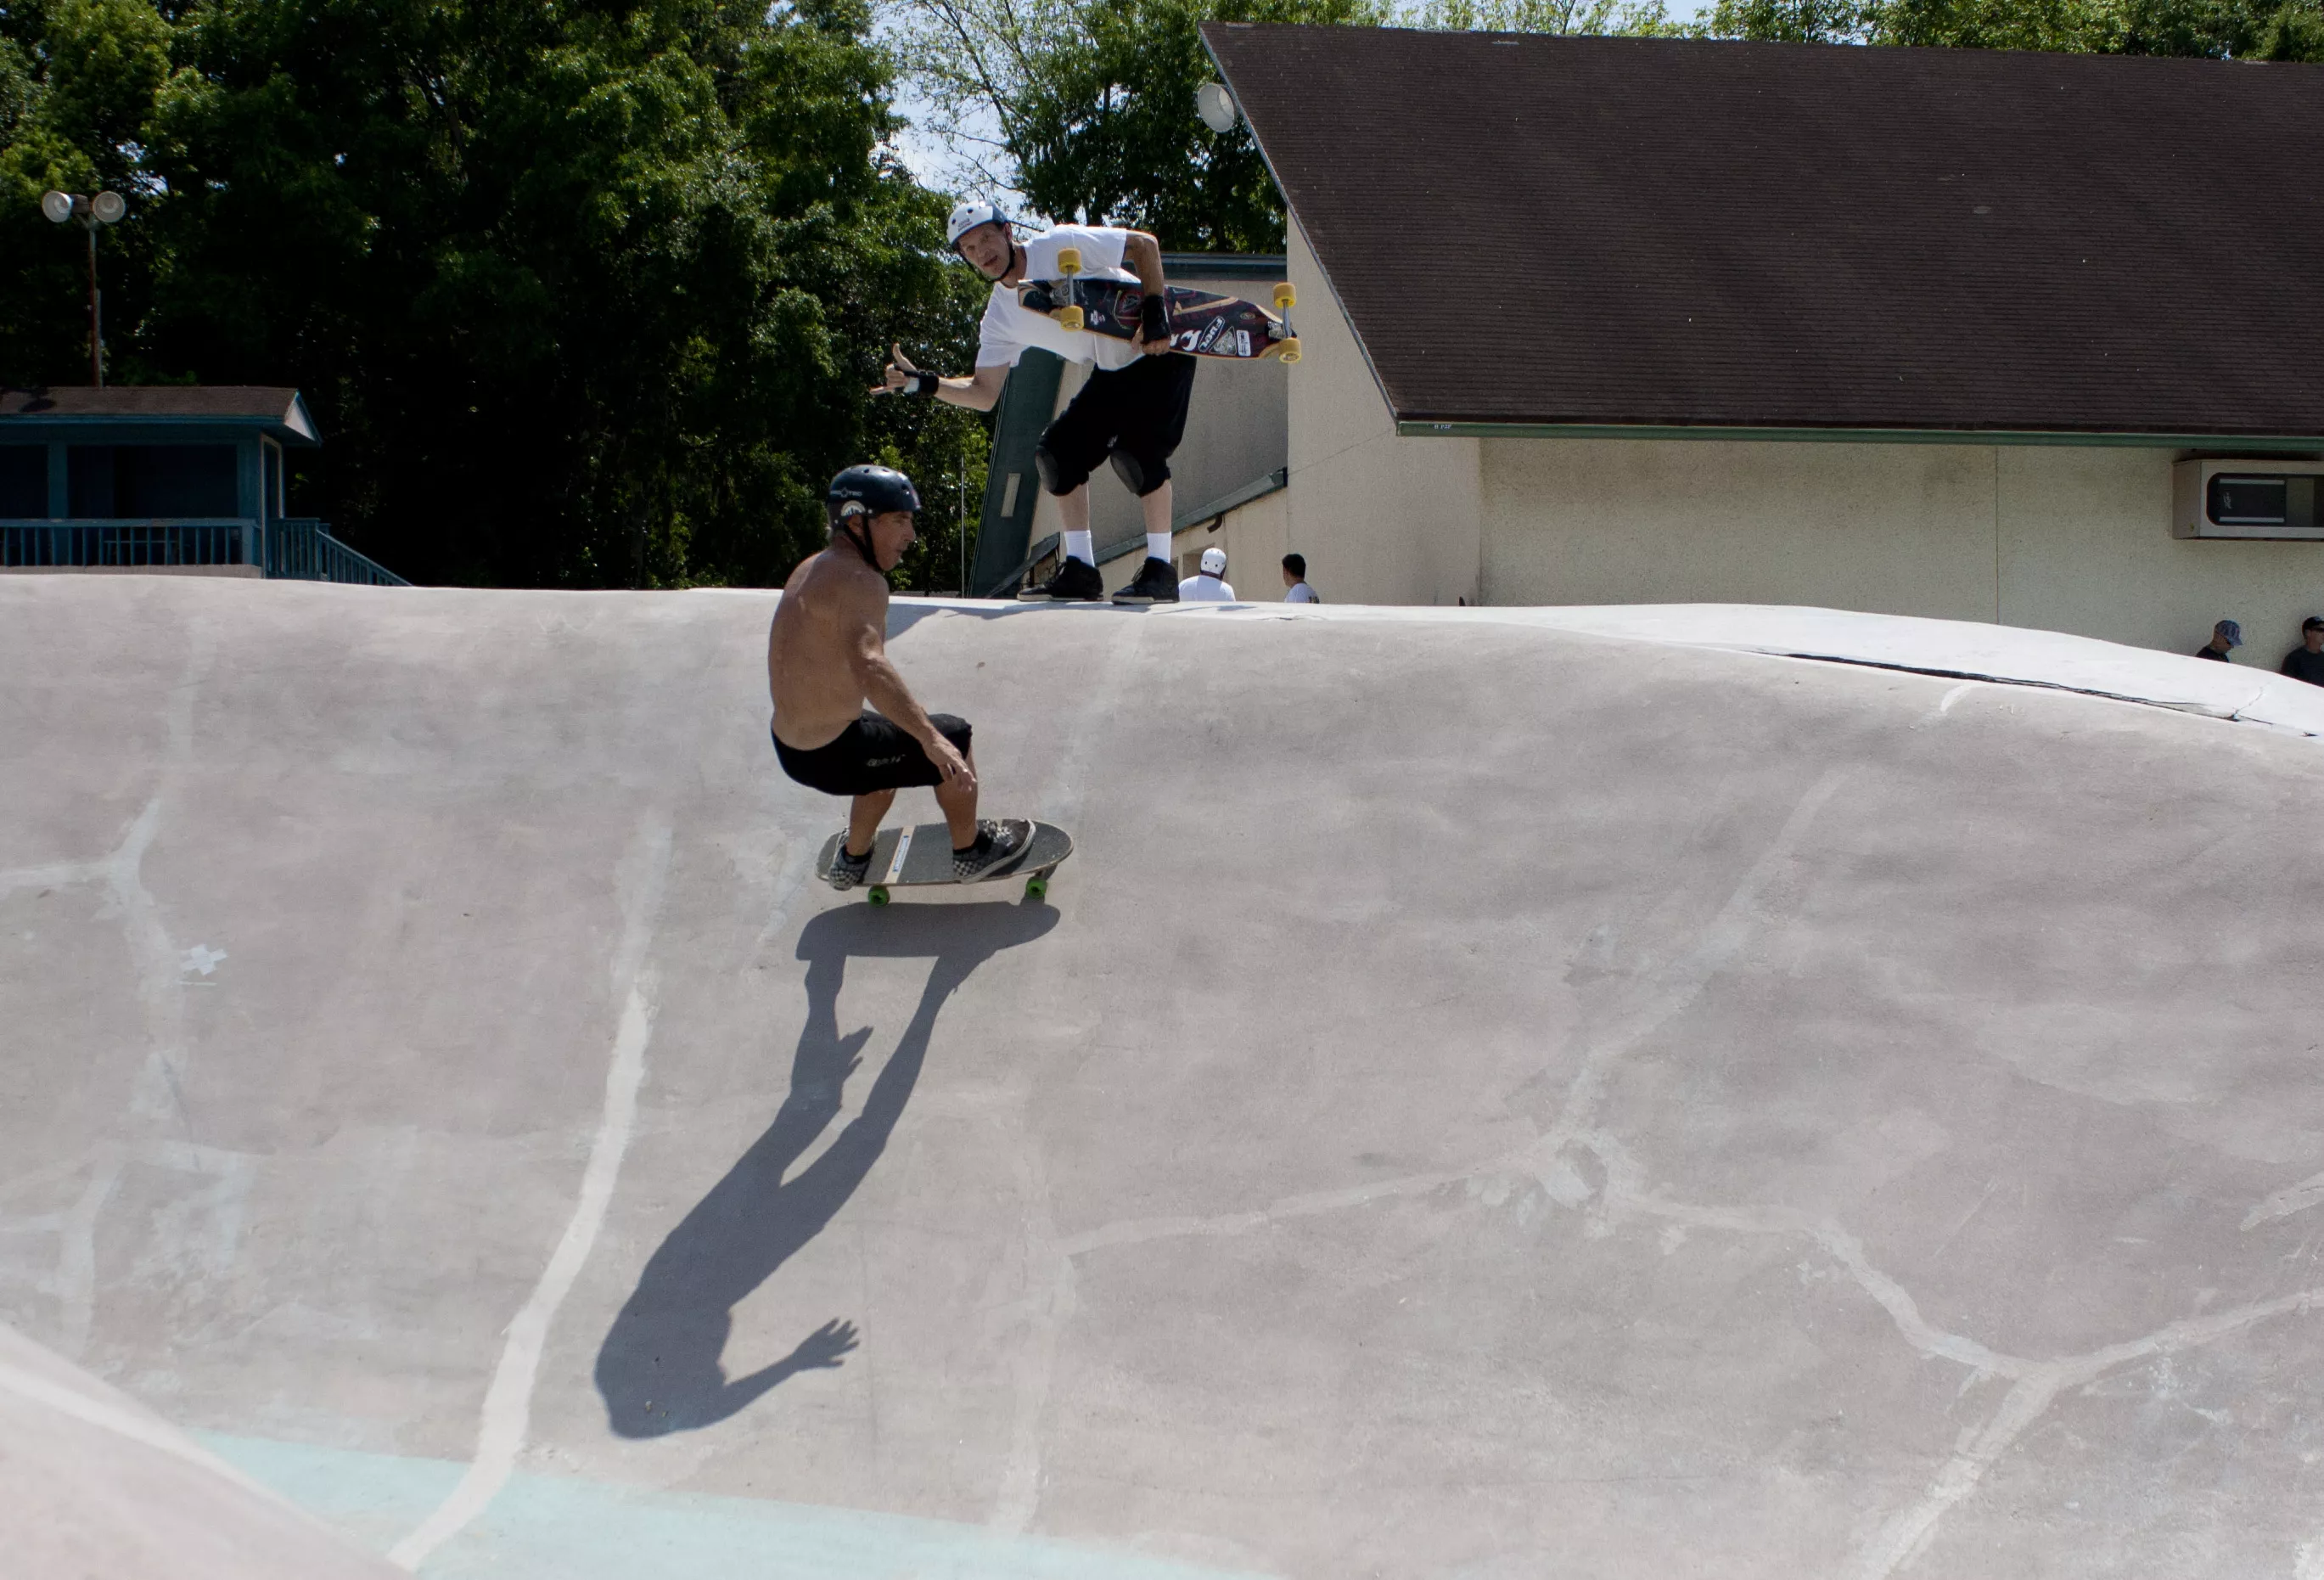 Kona Skate Park in USA, North America | Skateboarding - Rated 4.4